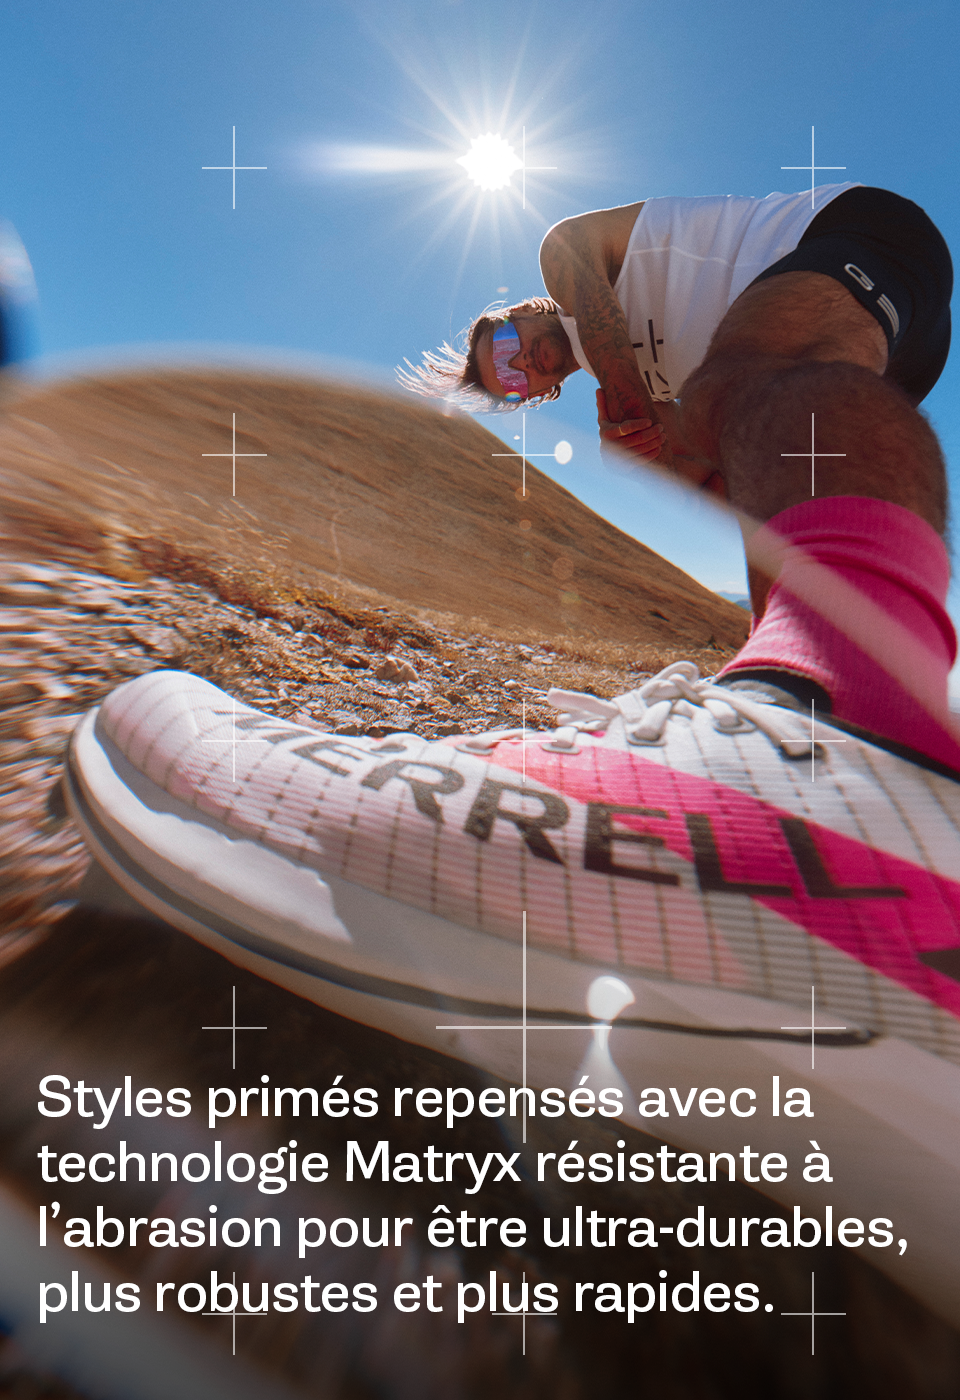 Styles primés repensés avec la technologie Matryx résistante à l'abrasion pour être ultra-durables, plus robustes et plus rapides.